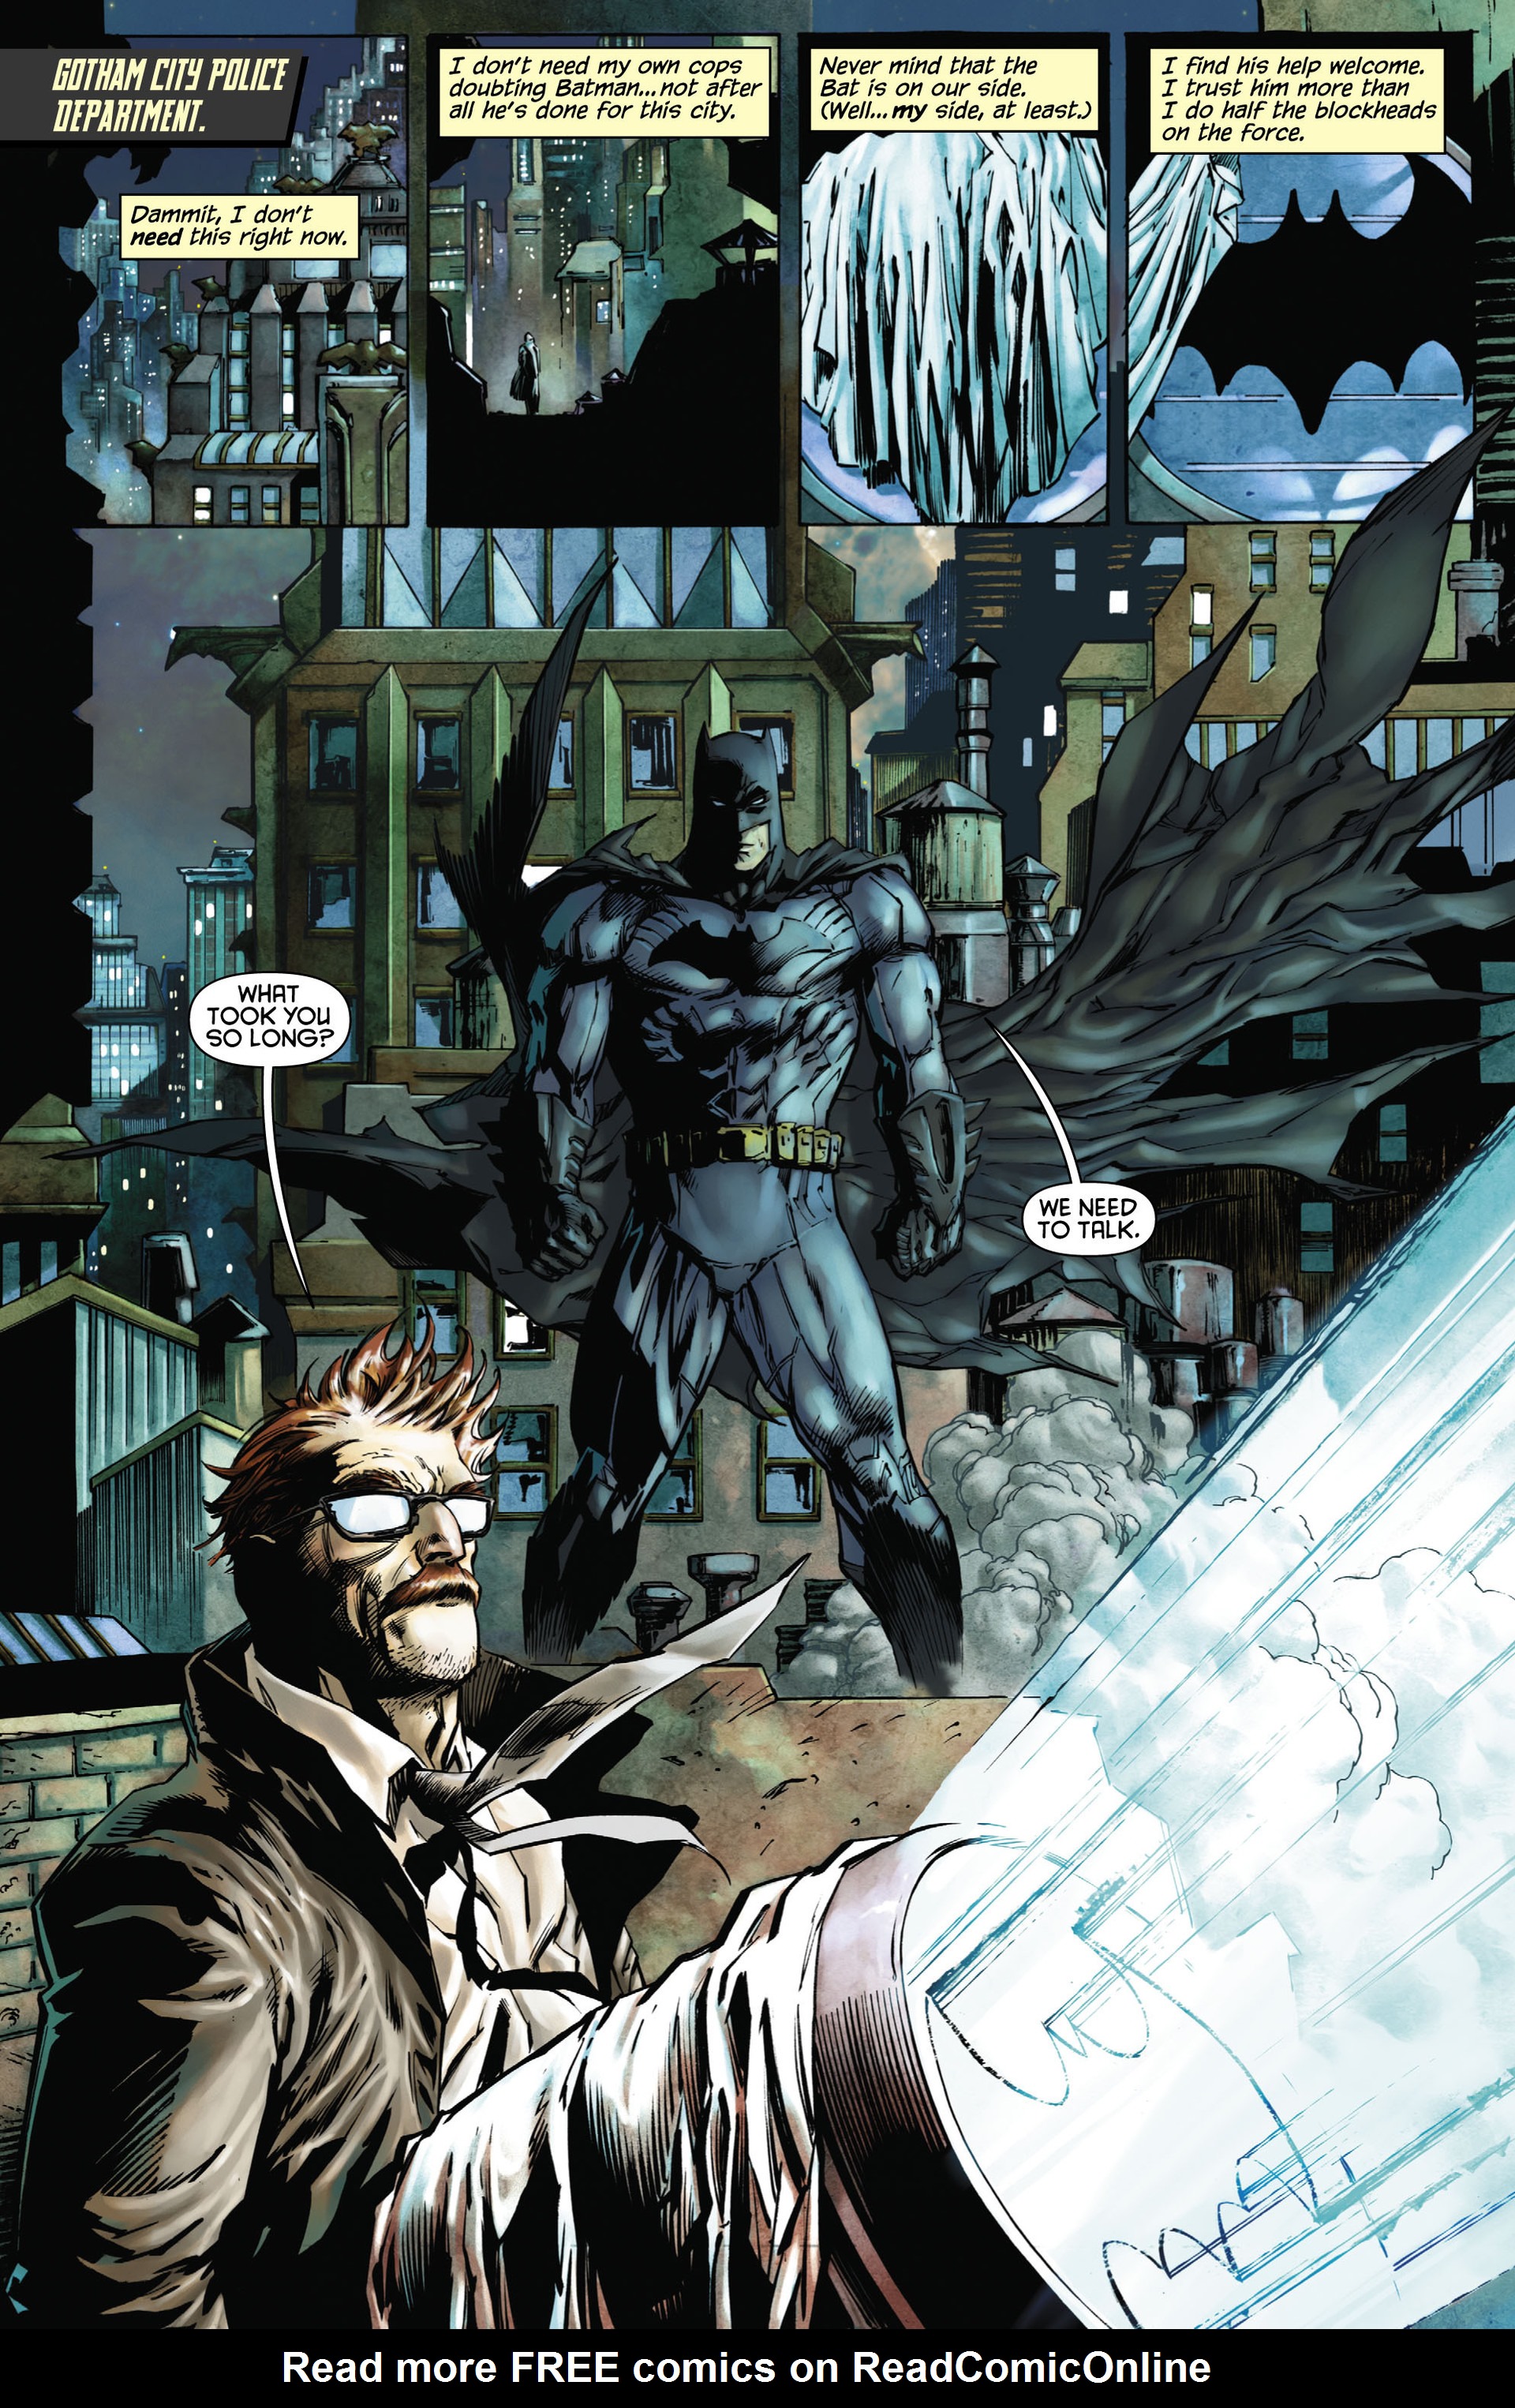 Read online Batman: Detective Comics comic -  Issue # TPB 1 - 16